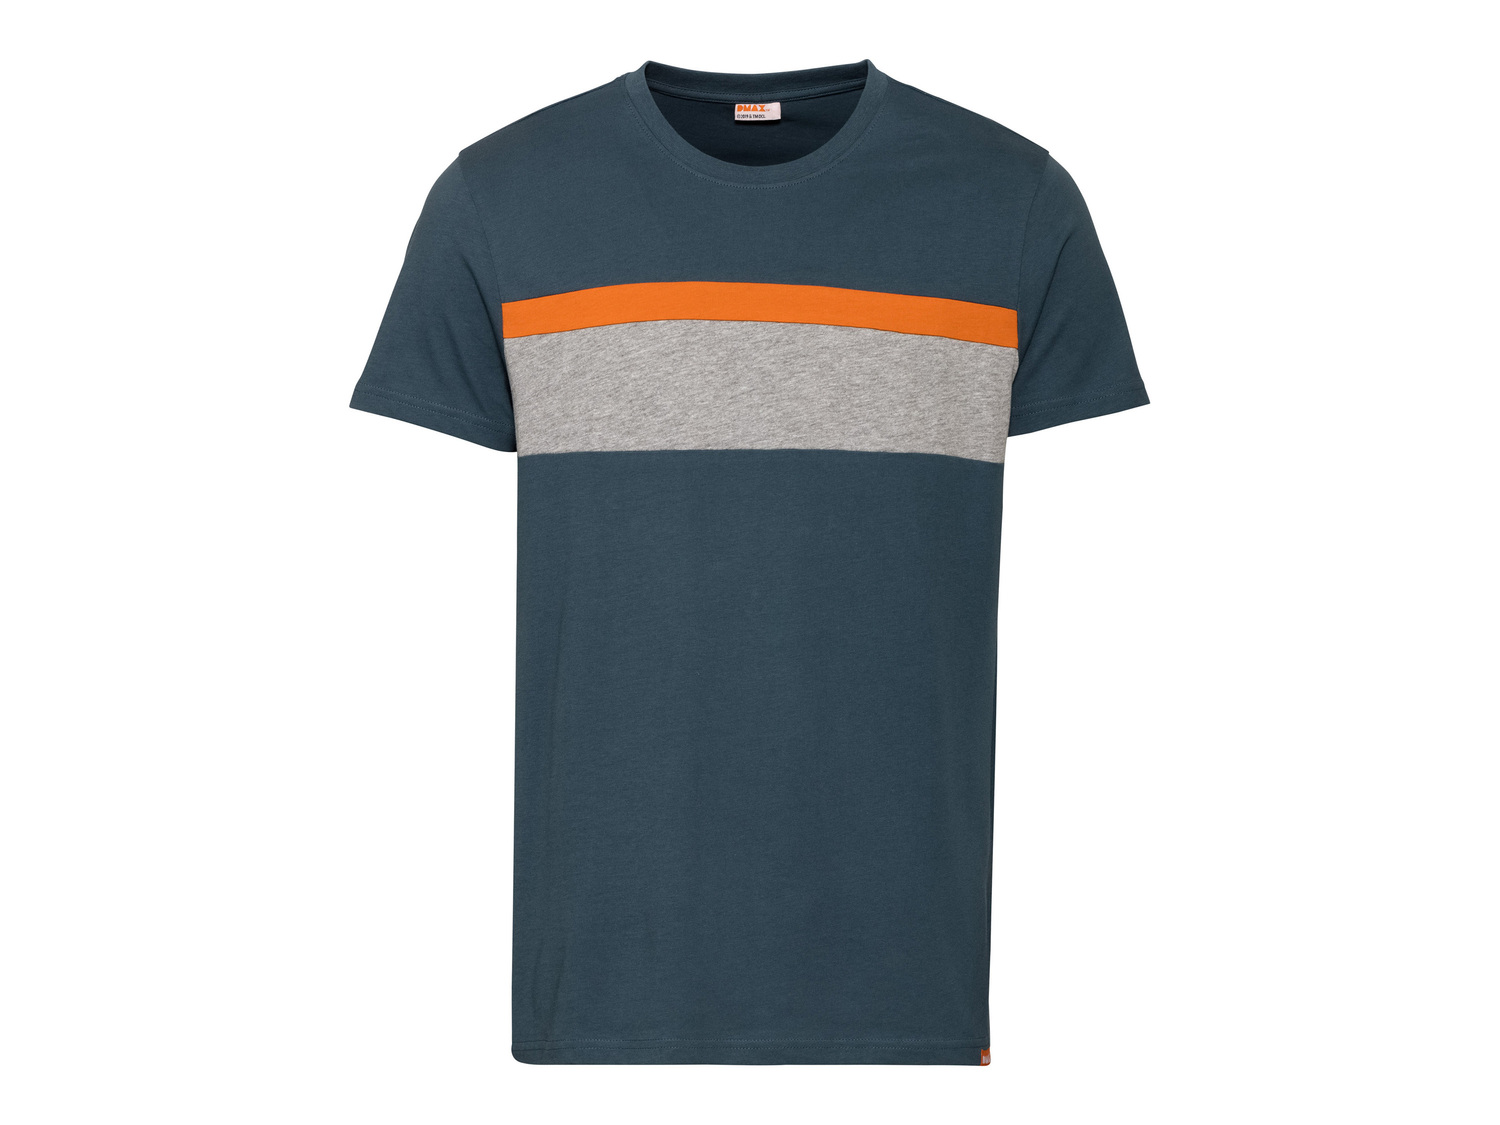 T-shirt da uomo DMAX Dmax, prezzo 4.99 € 
Misure: S-XL
Taglie disponibili

Caratteristiche

- ...